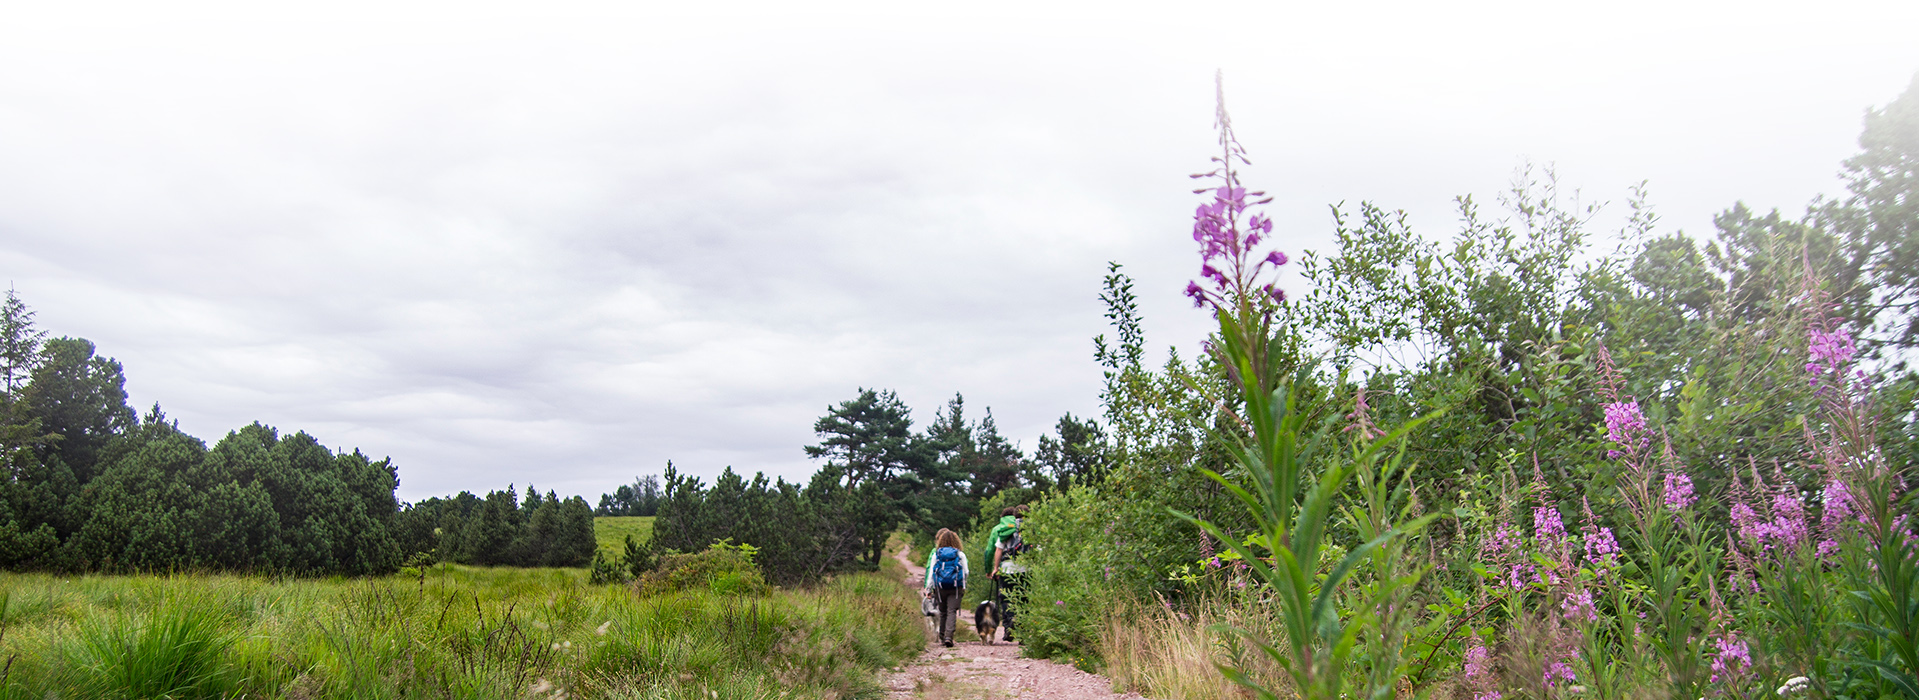 Wanderer auf einem Wanderweg. Die Landschaft ist halboffen mit größeren Büschen, rechts ragen einige rosa Blüten ins Bild.